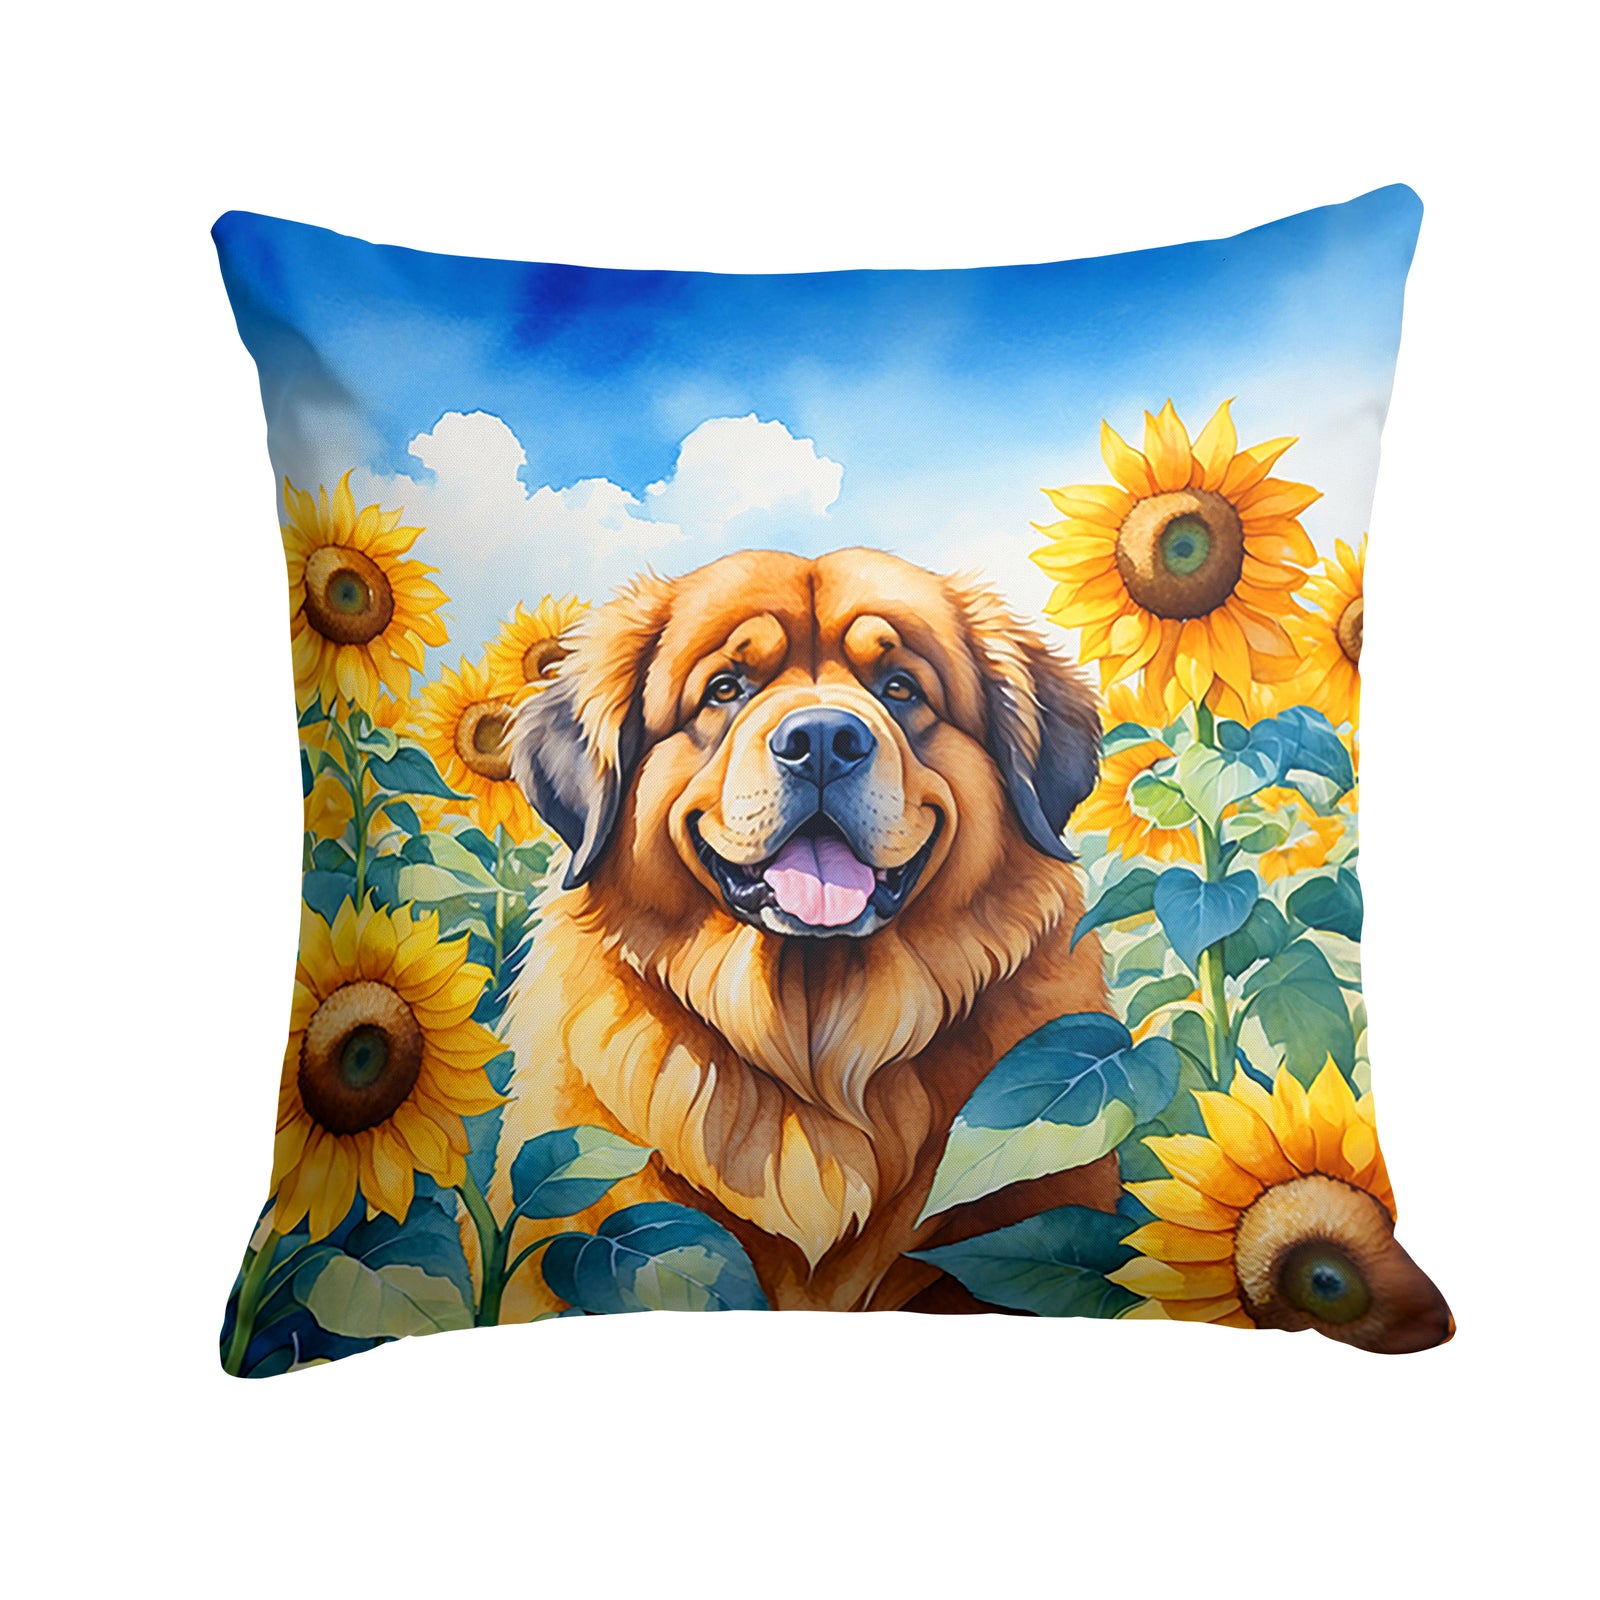 Buy this Tibetan Mastiff in Sunflowers Throw Pillow